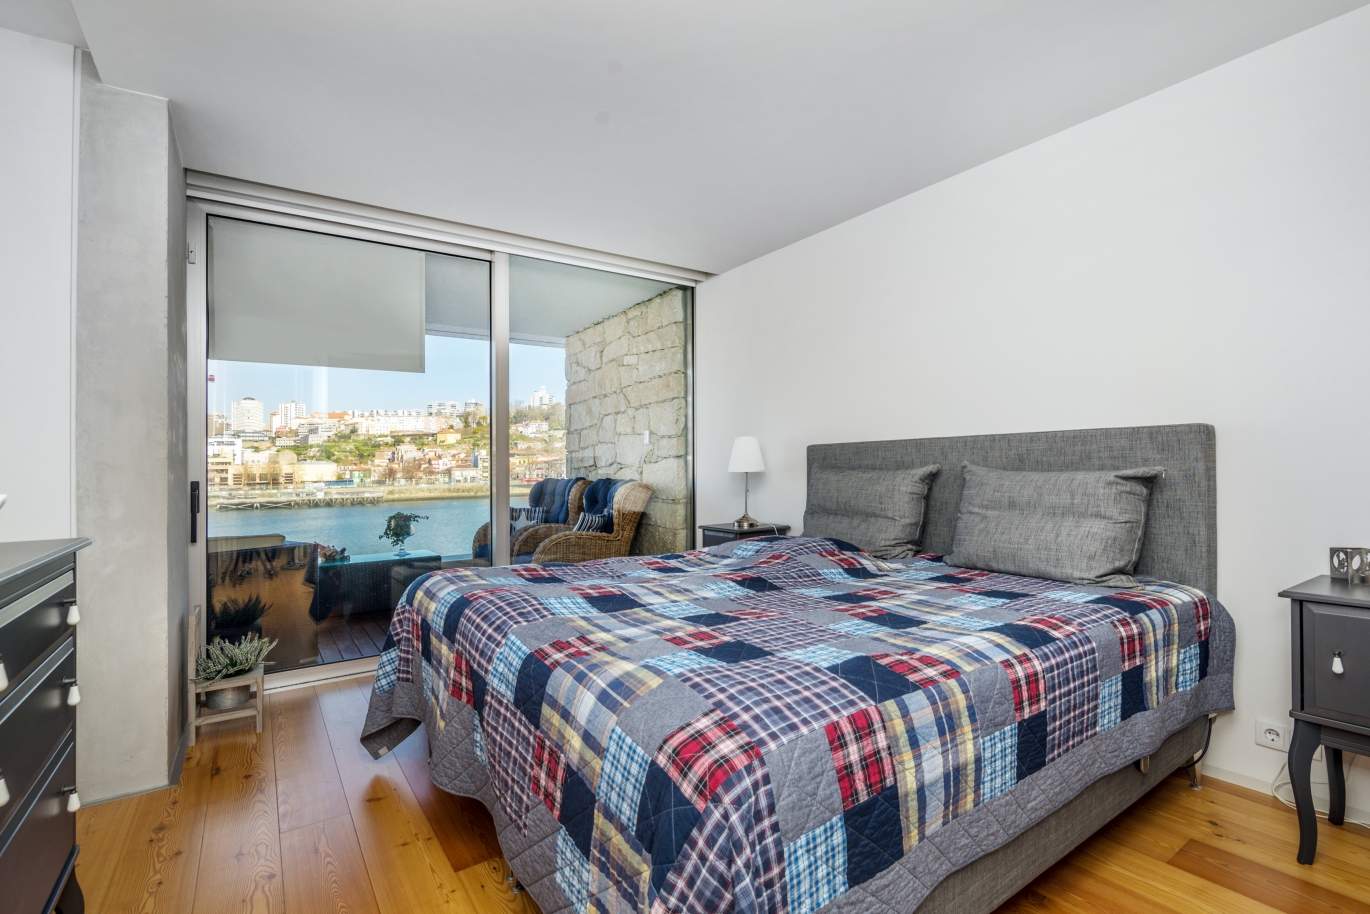 Venda apartamento de luxo com vistas rio, V. N. Gaia, Porto, Portugal_99239